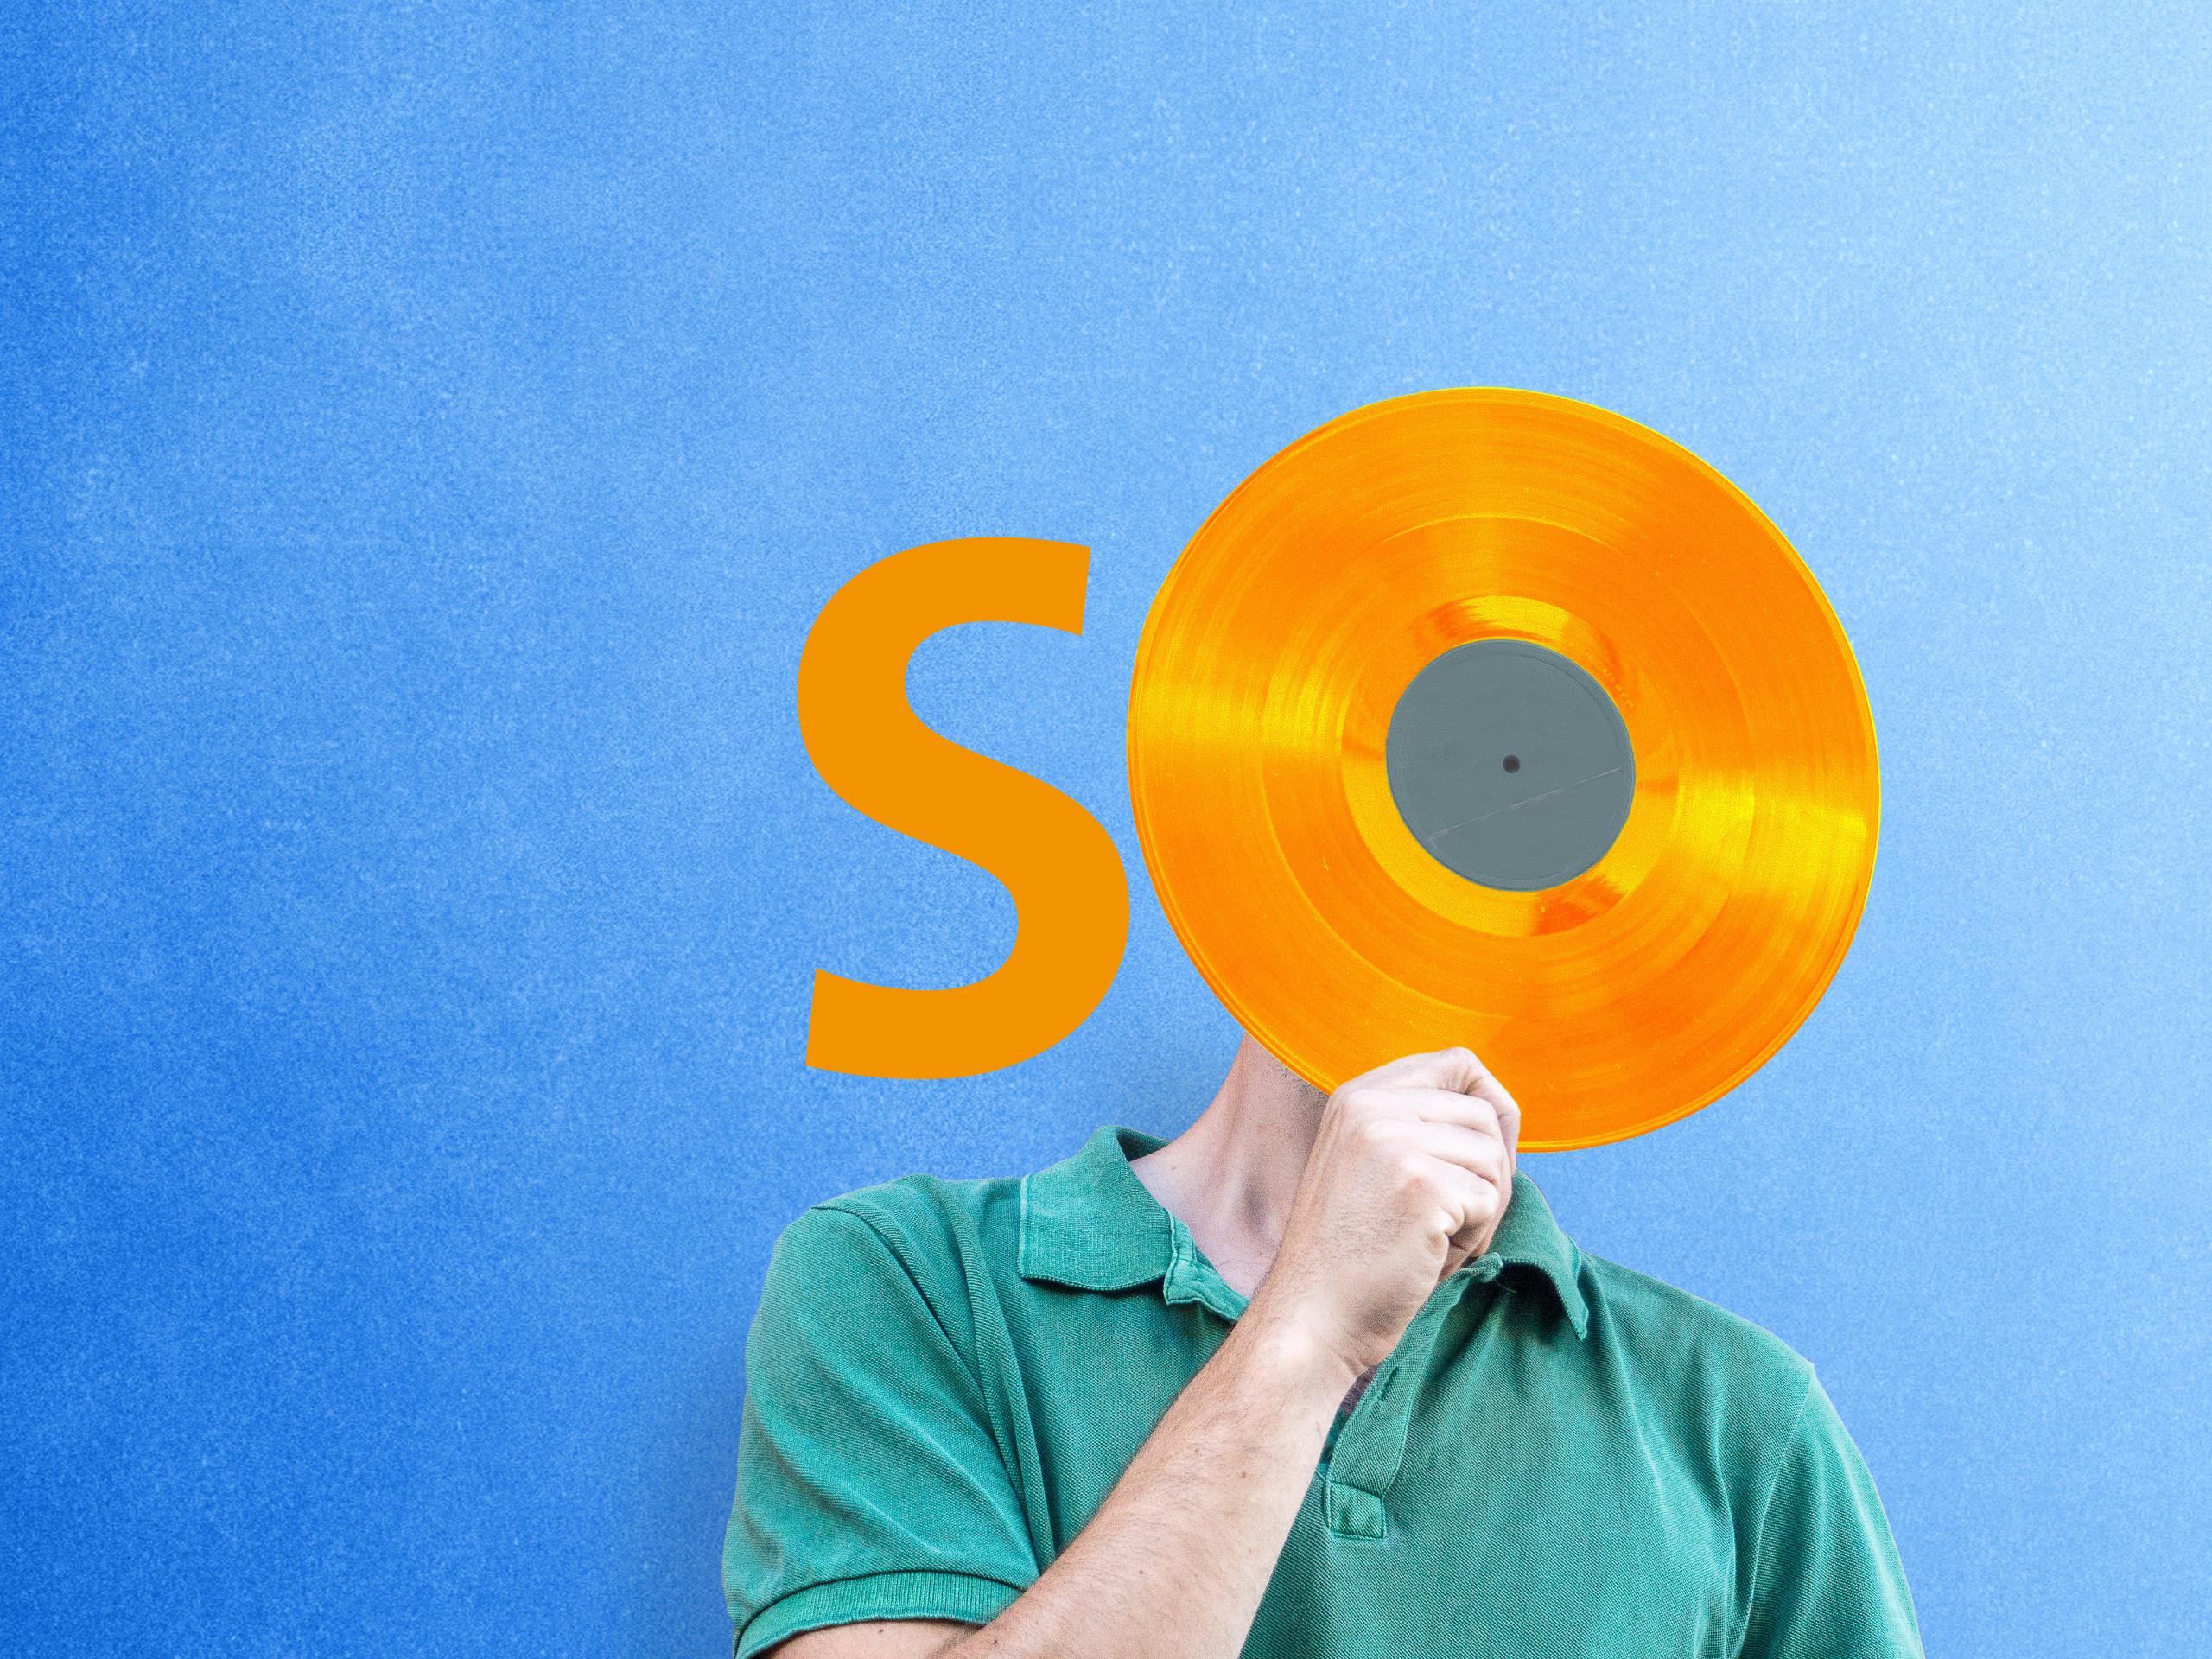 Menschlicher Körper mit orangener, O-förmiger Schallplatte in der Hand und S-Buchstaben vor blauem Hintergrund